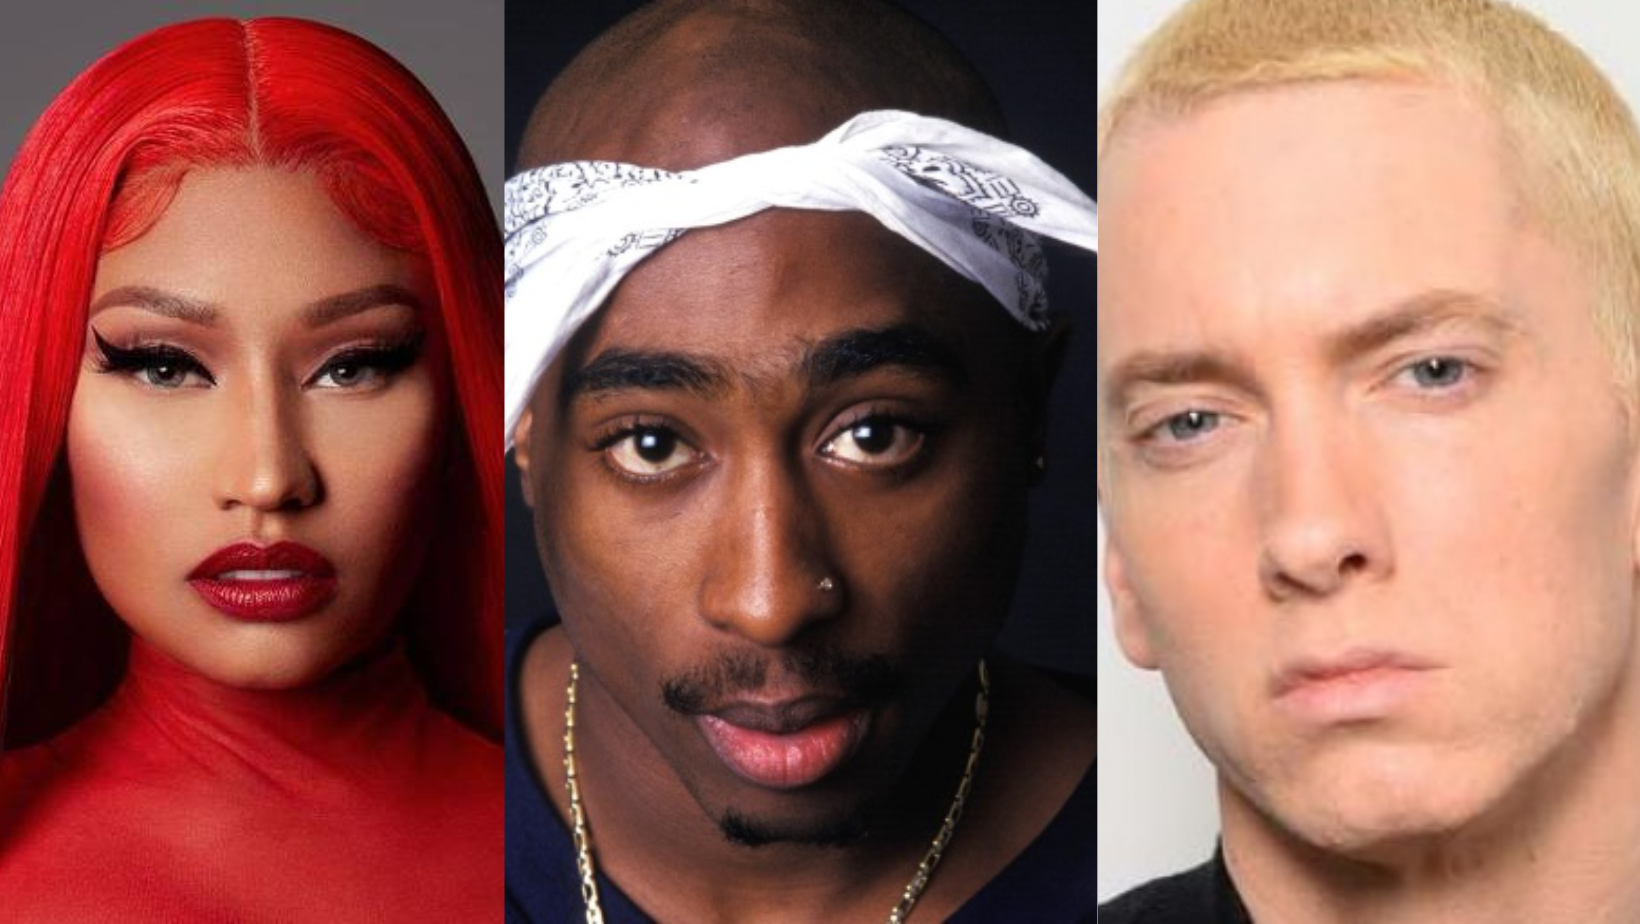 Os 10 melhores rappers de todos os tempos